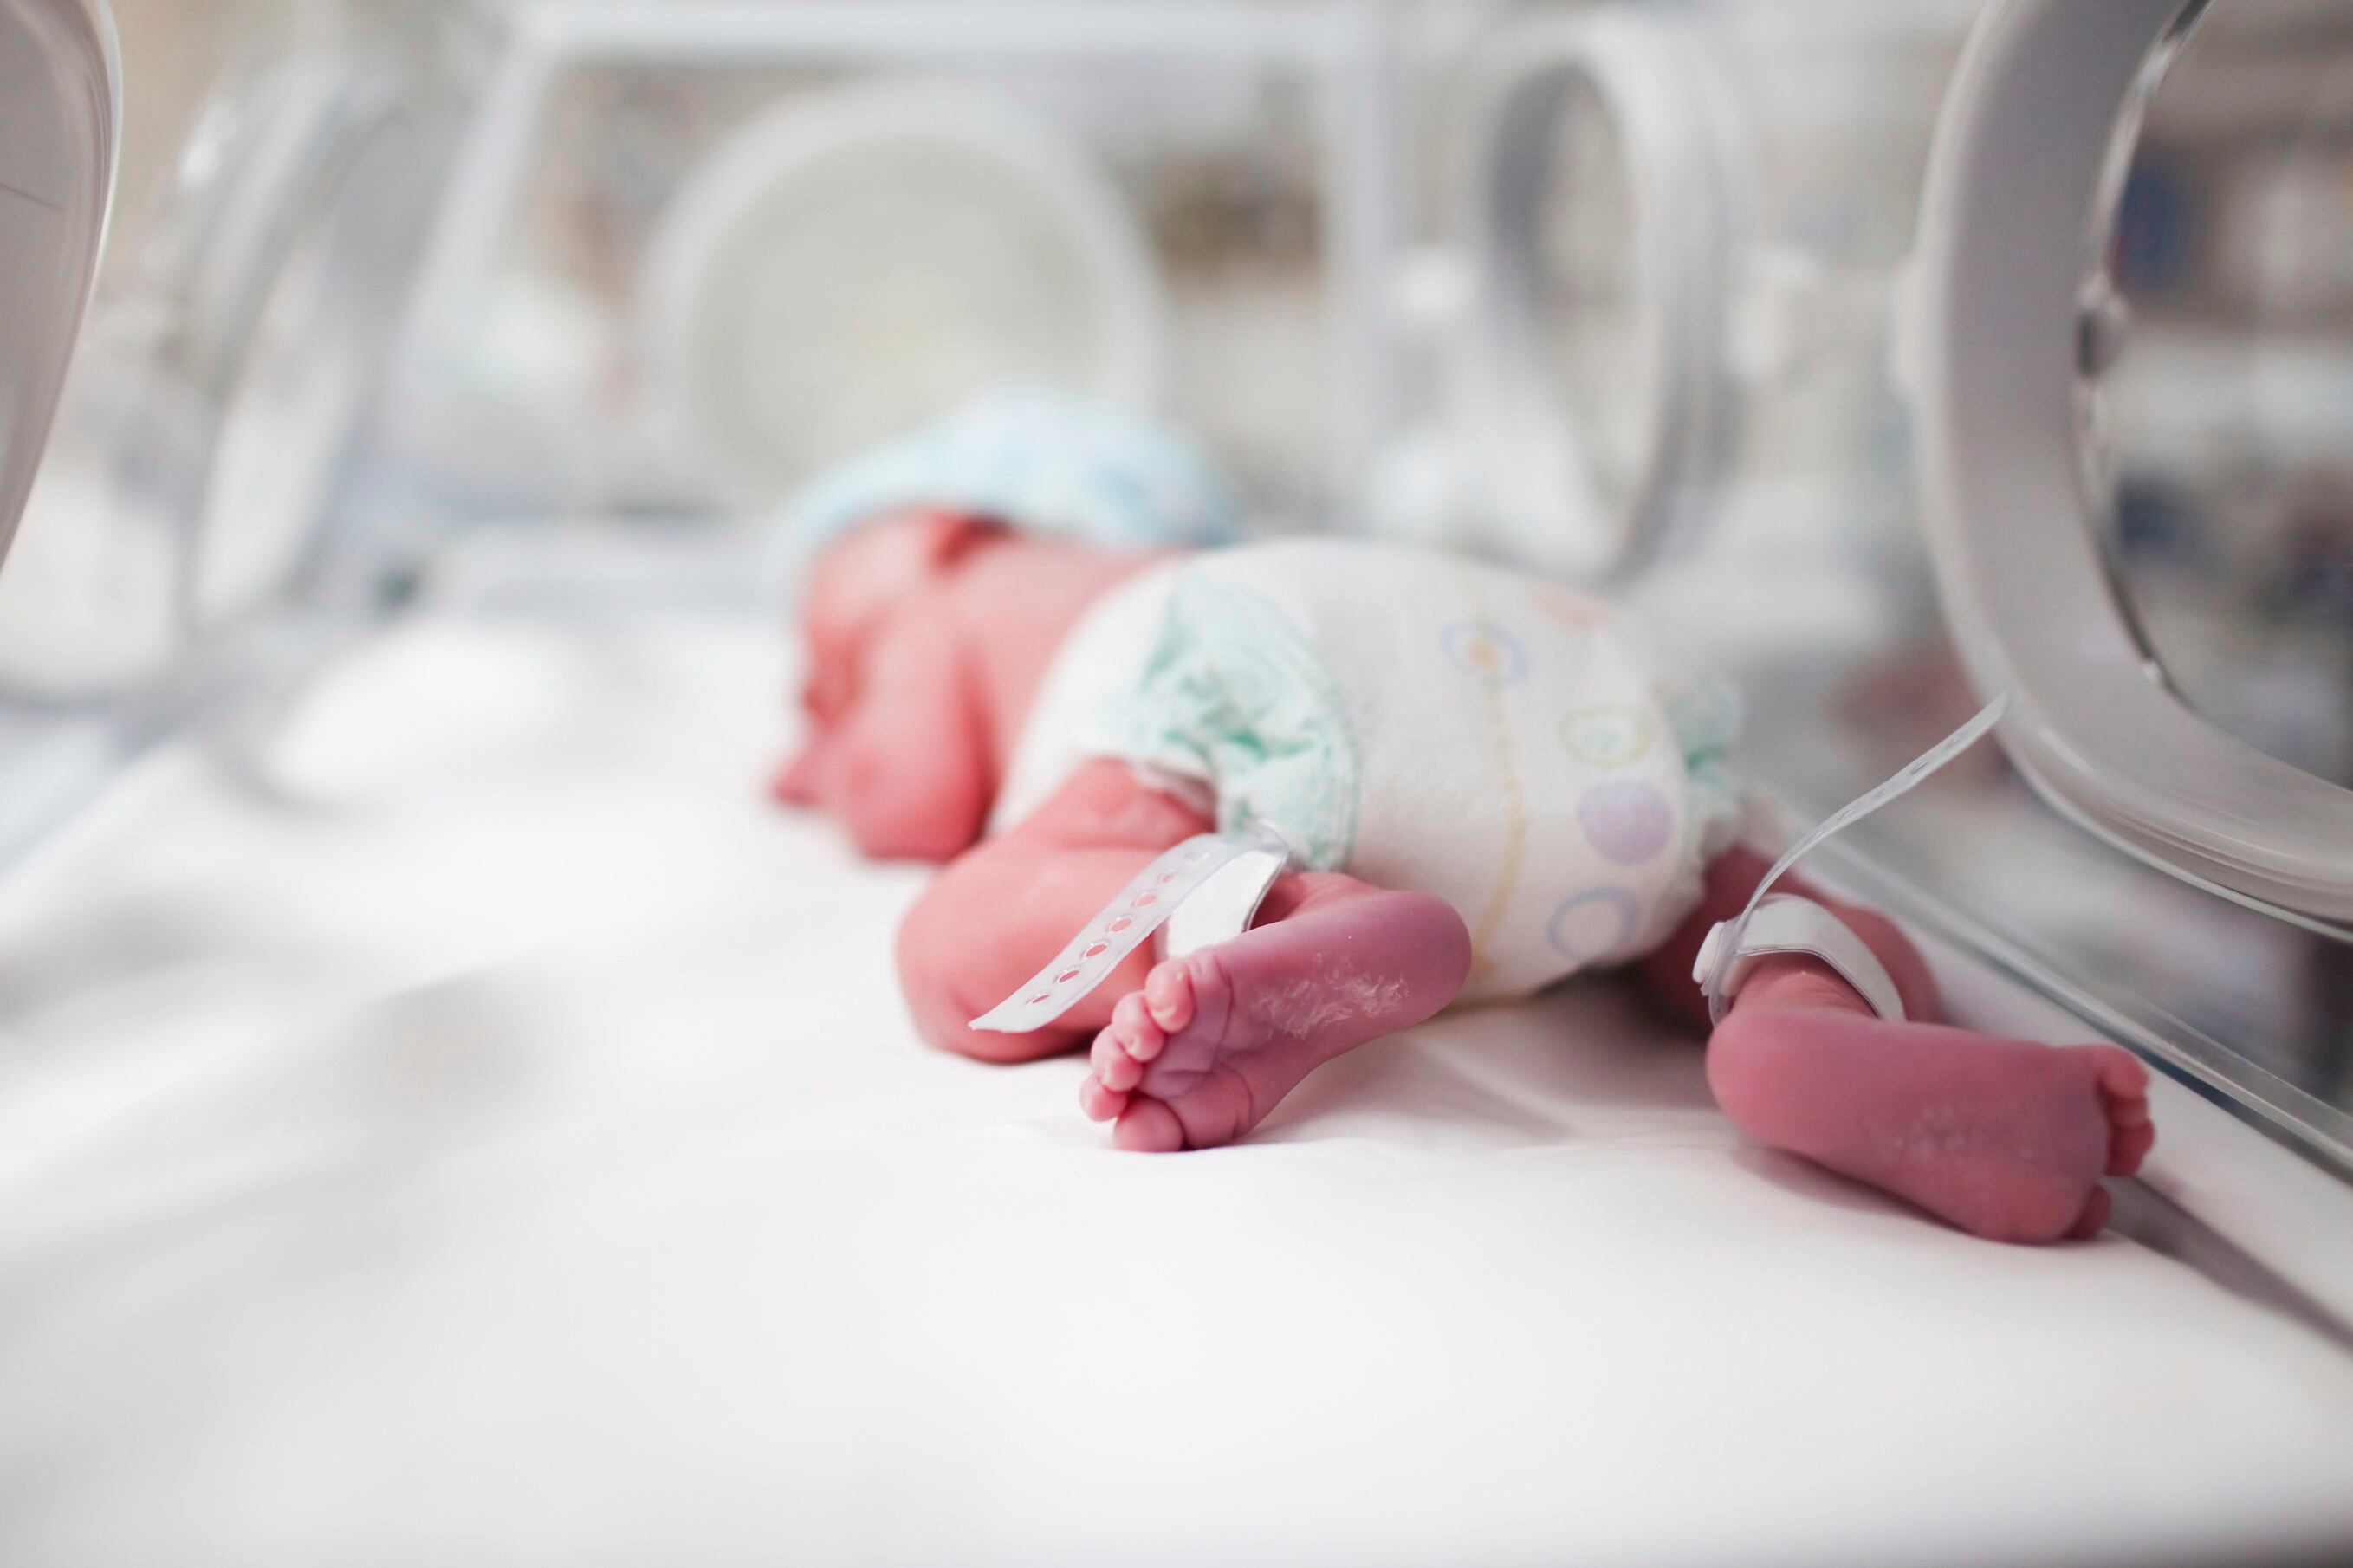 Pese a las creencias previas, los recién nacidos sienten dolor como los adultos, advierten las más recientes investigaciones
